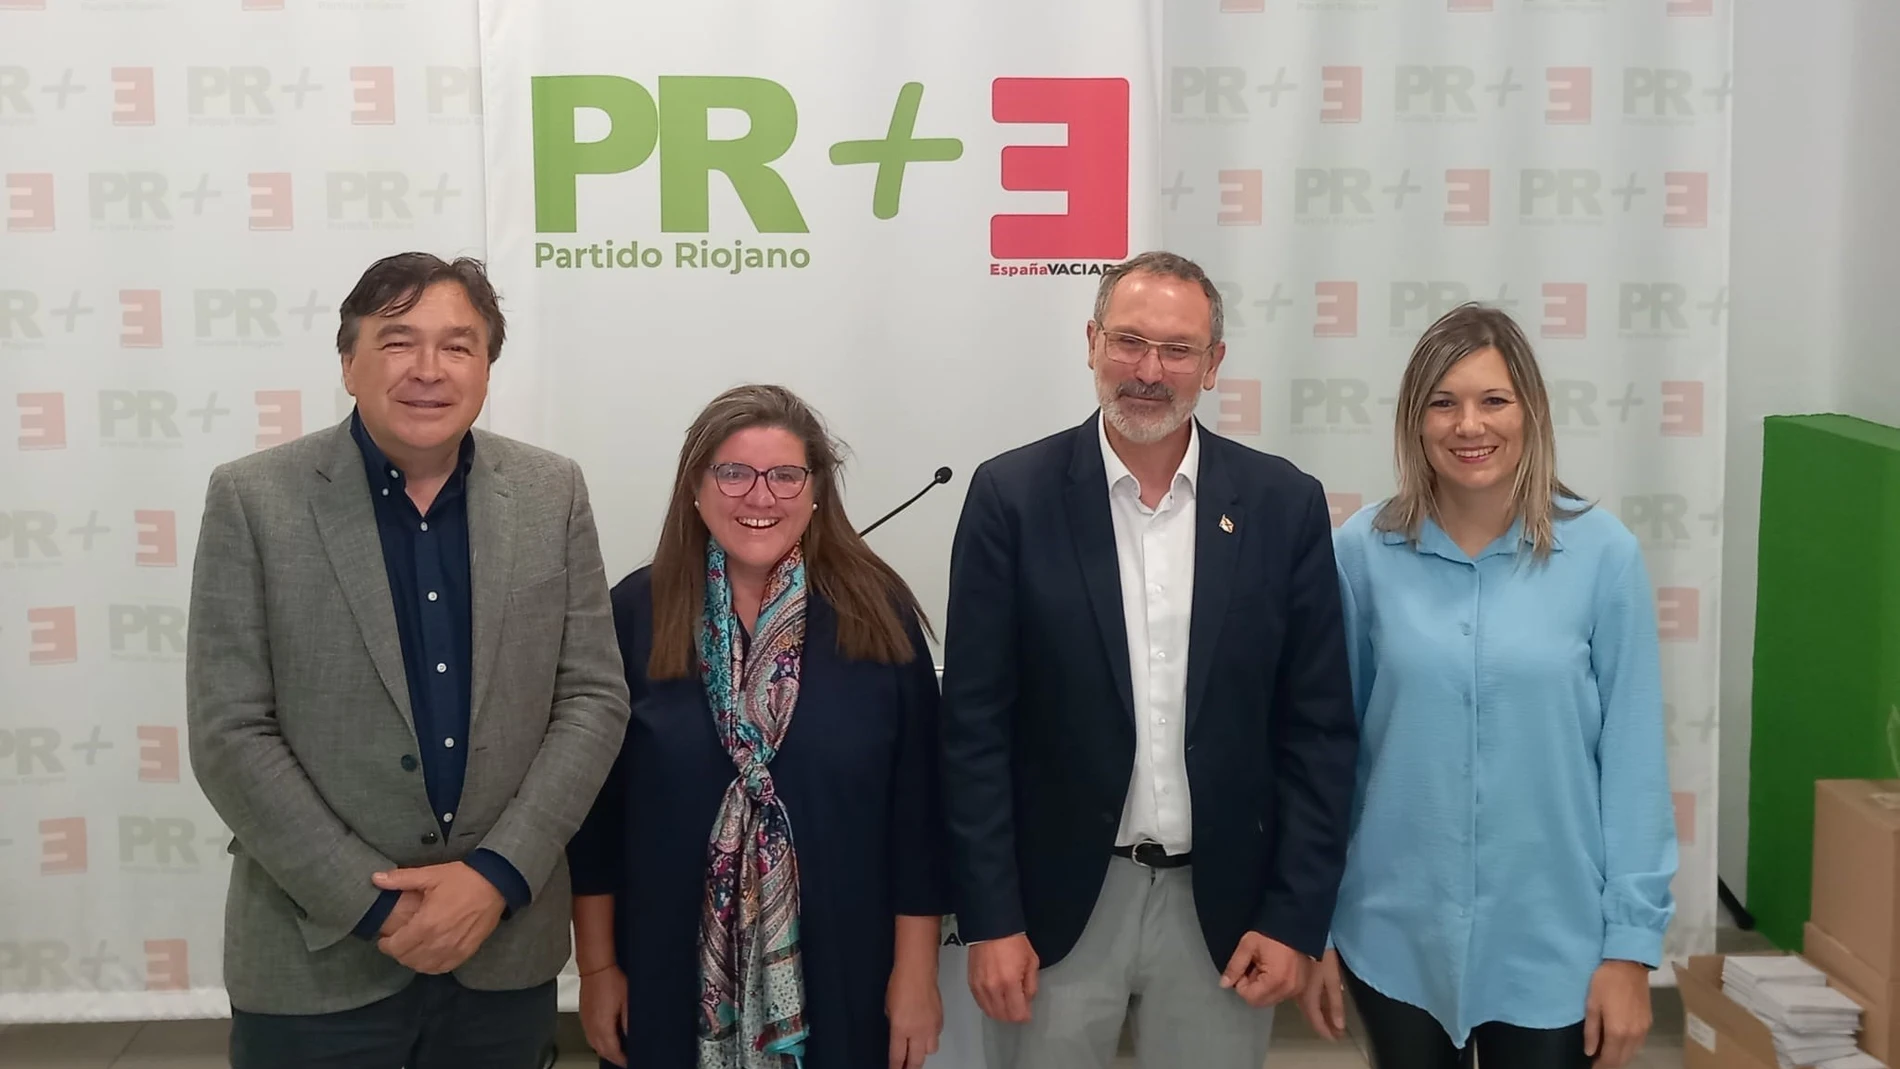 Guitarte pide el voto para PR+EV que llevará la voz a las instituciones "con políticas de equilibrio territorial" EUROPA PRESS 26/05/2023